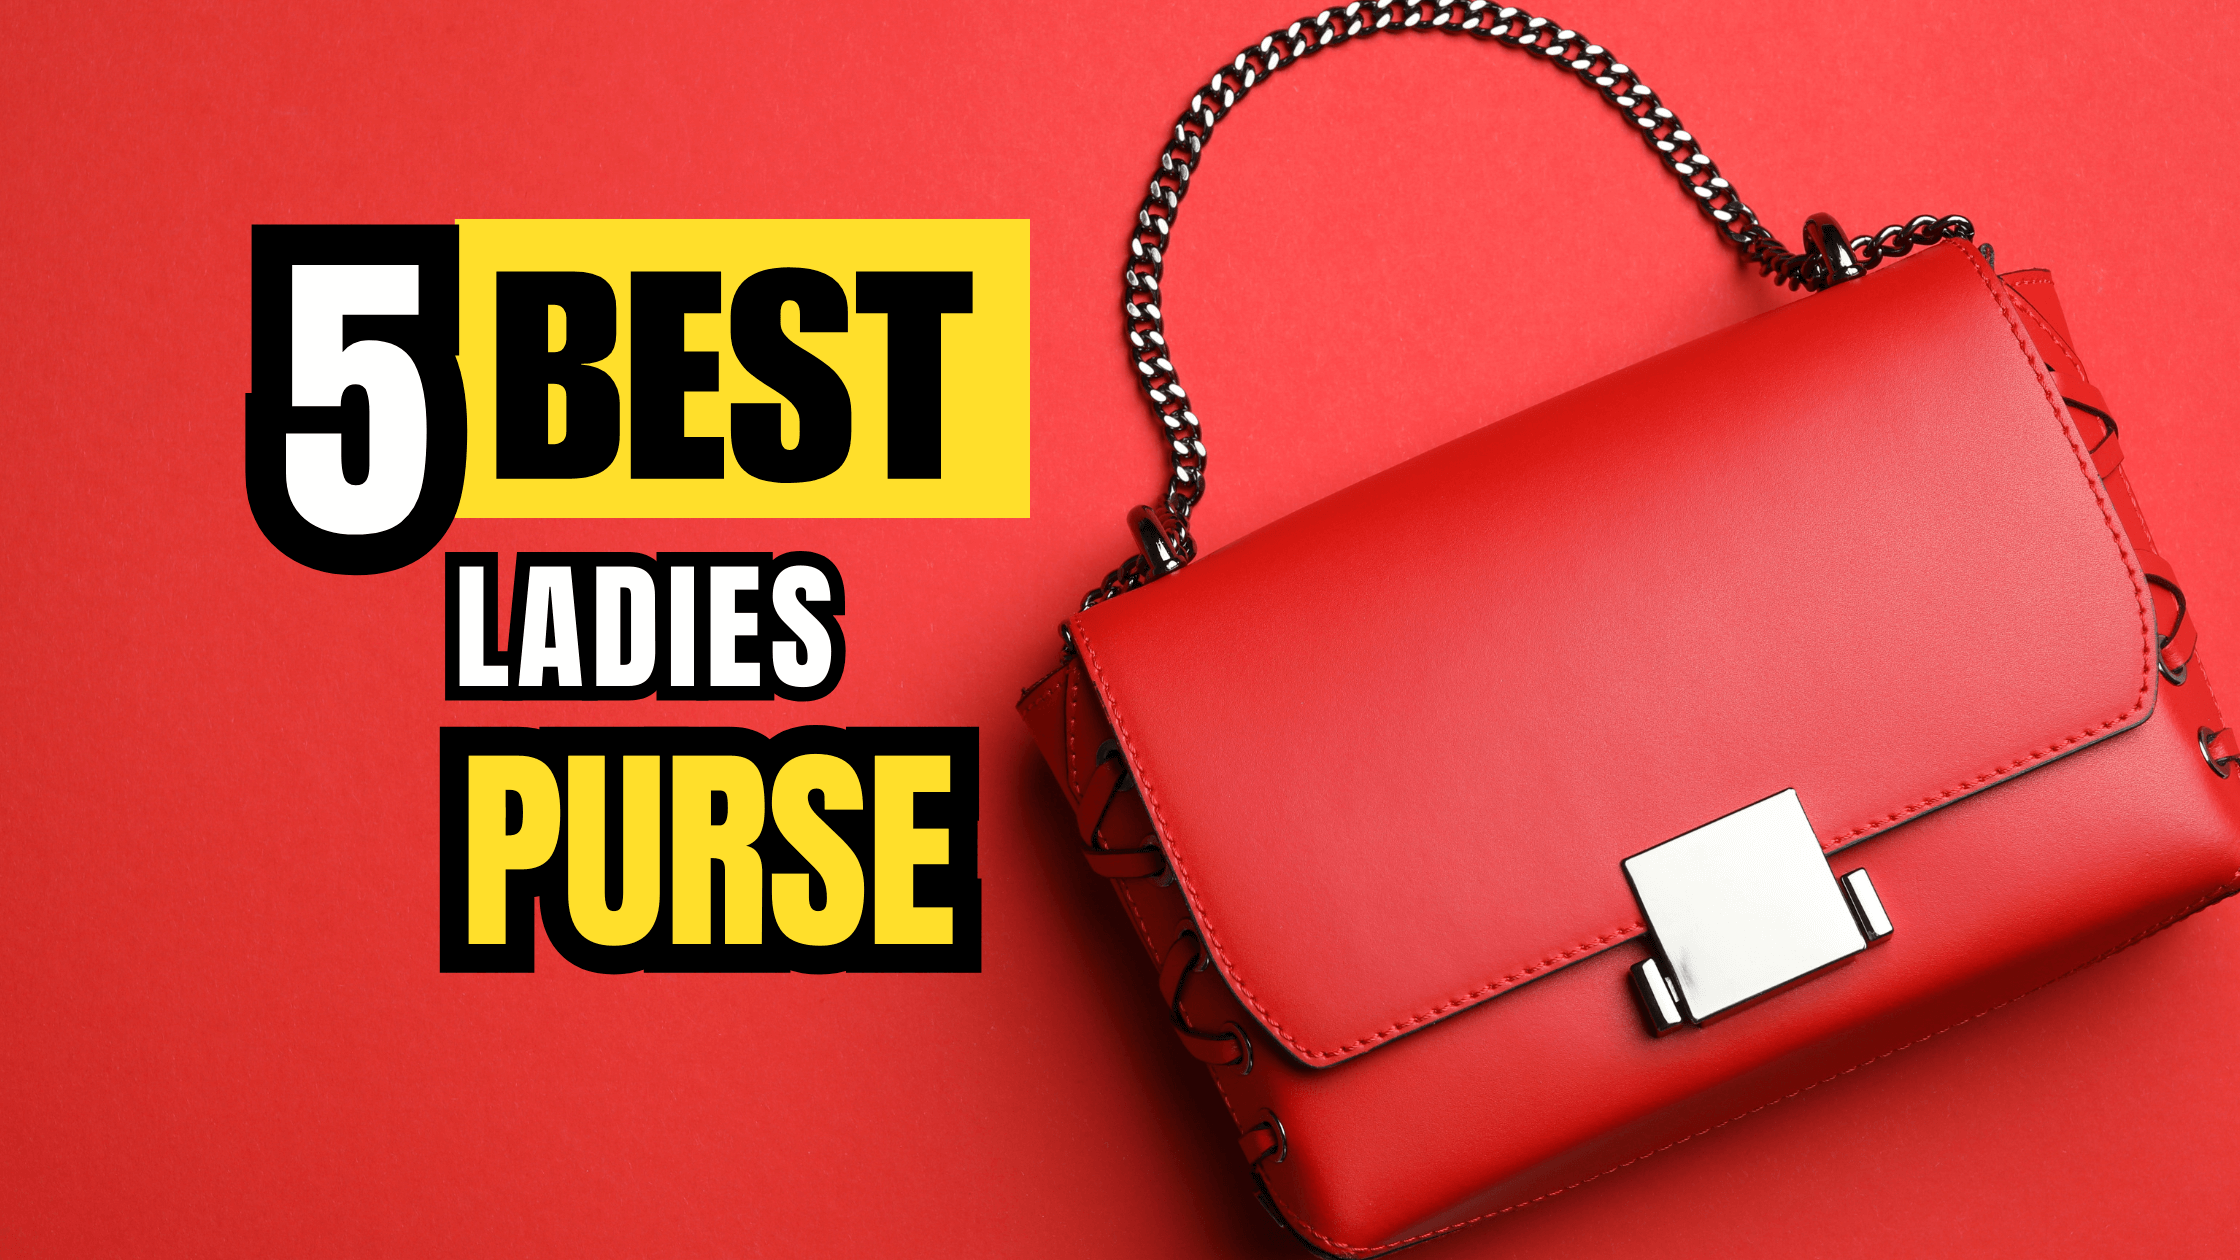 5 Best Ladies Purse in India